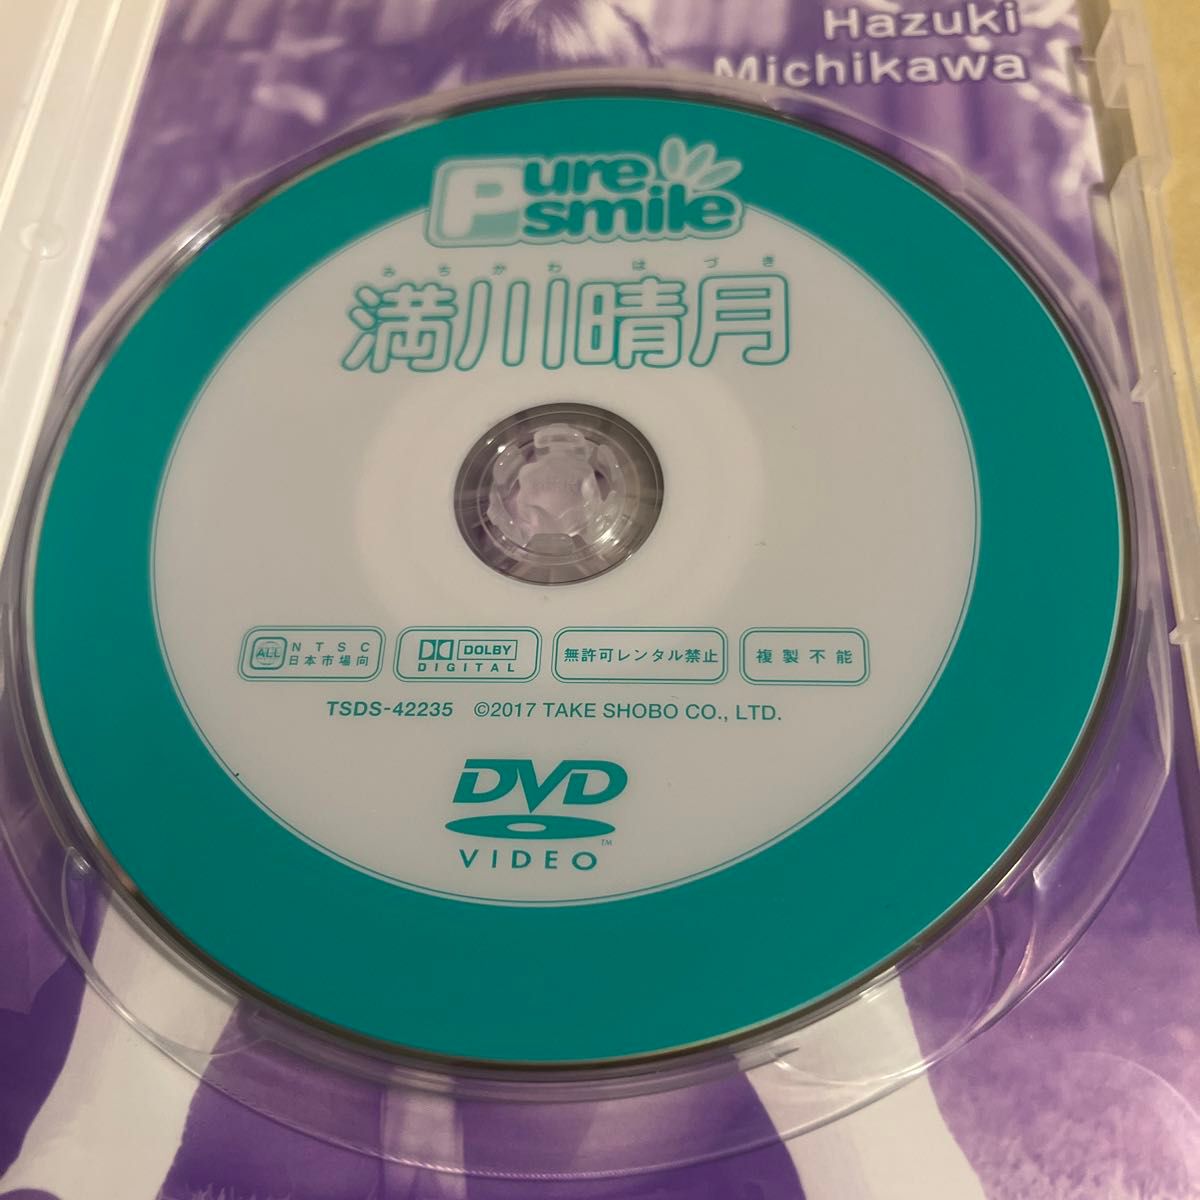 竹書房 満川晴月 ピュアスマイル DVD